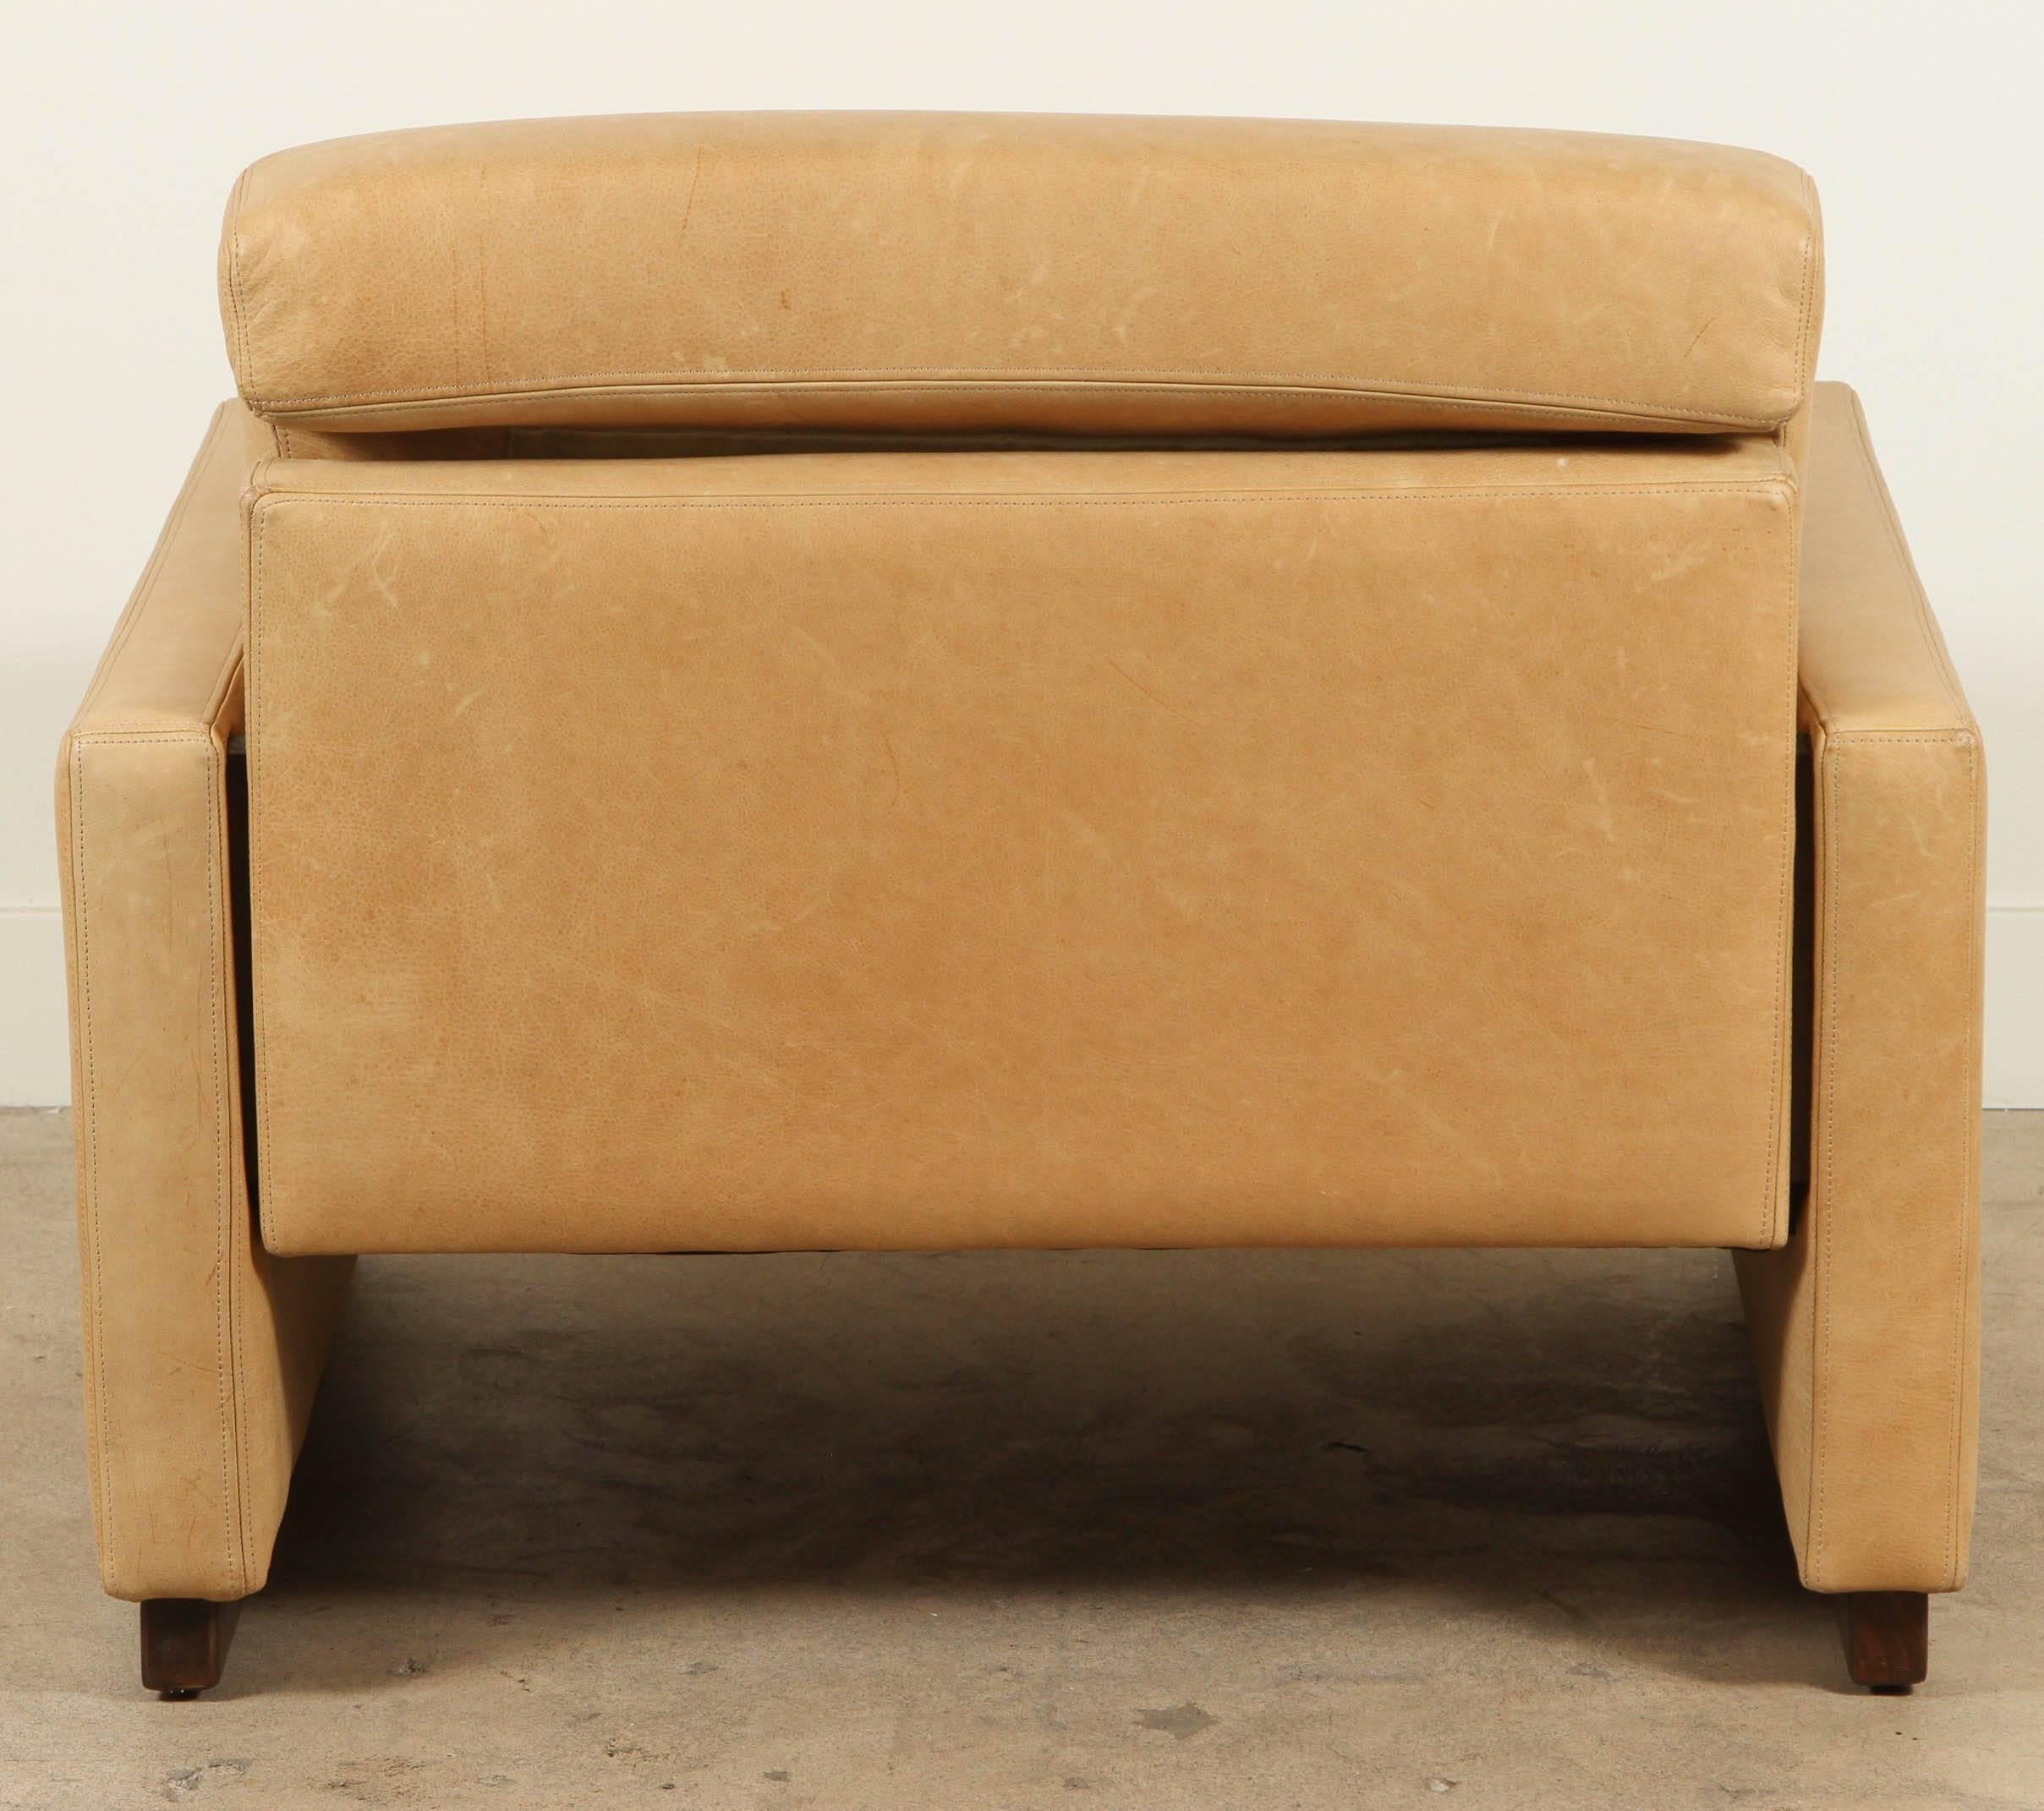 Leather Weldon Club Chair by Lawson-Fenning